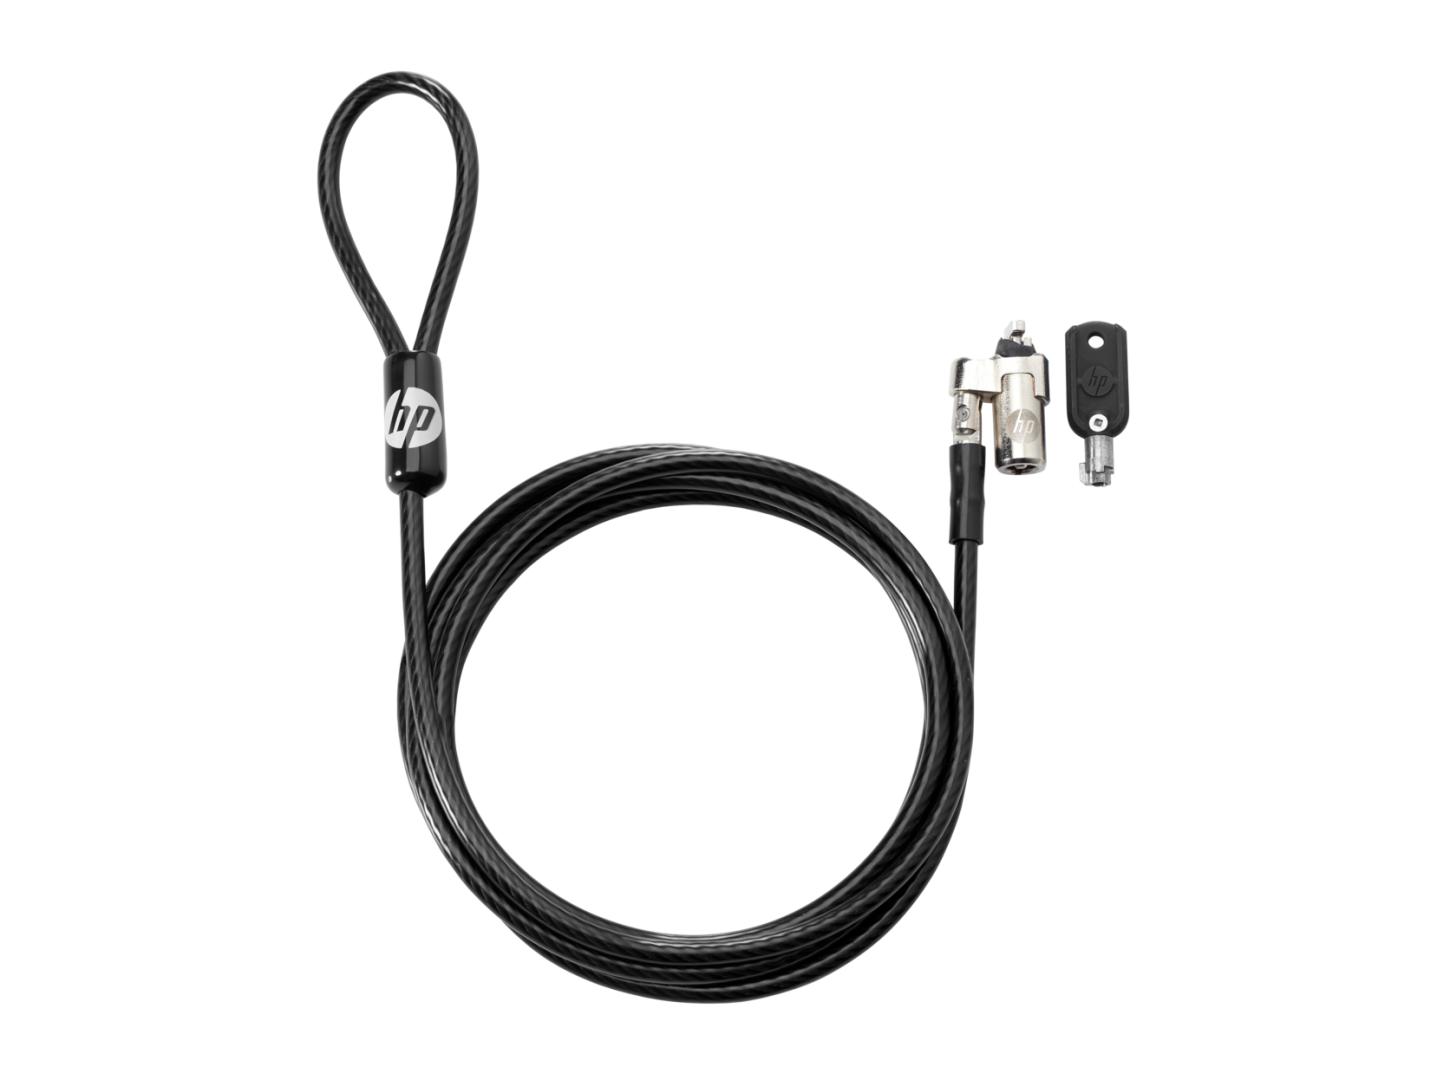 HP Cablu pentru securizare diametru 10mm, lungime 1.8m